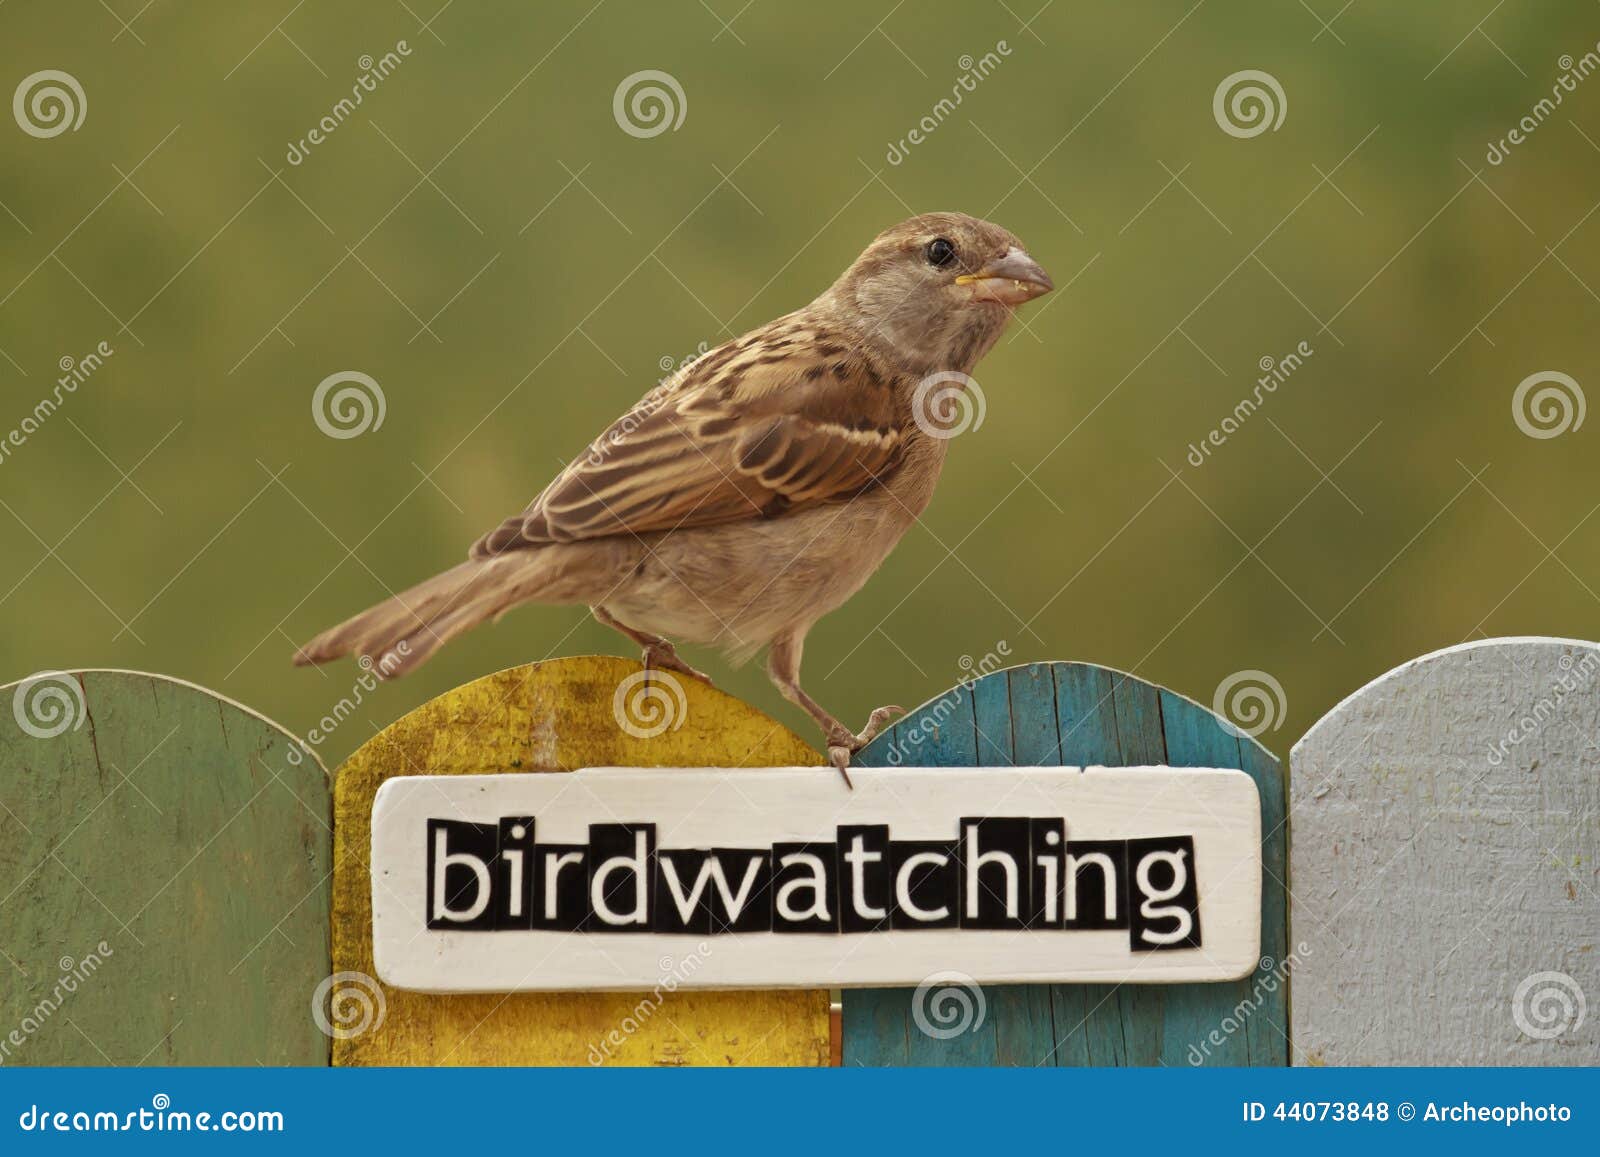 L'oiseau était Perché Sur Une Barrière Décorée De L'observation Des Oiseaux  De Mot Photo stock - Image du jaune, faune: 44073848